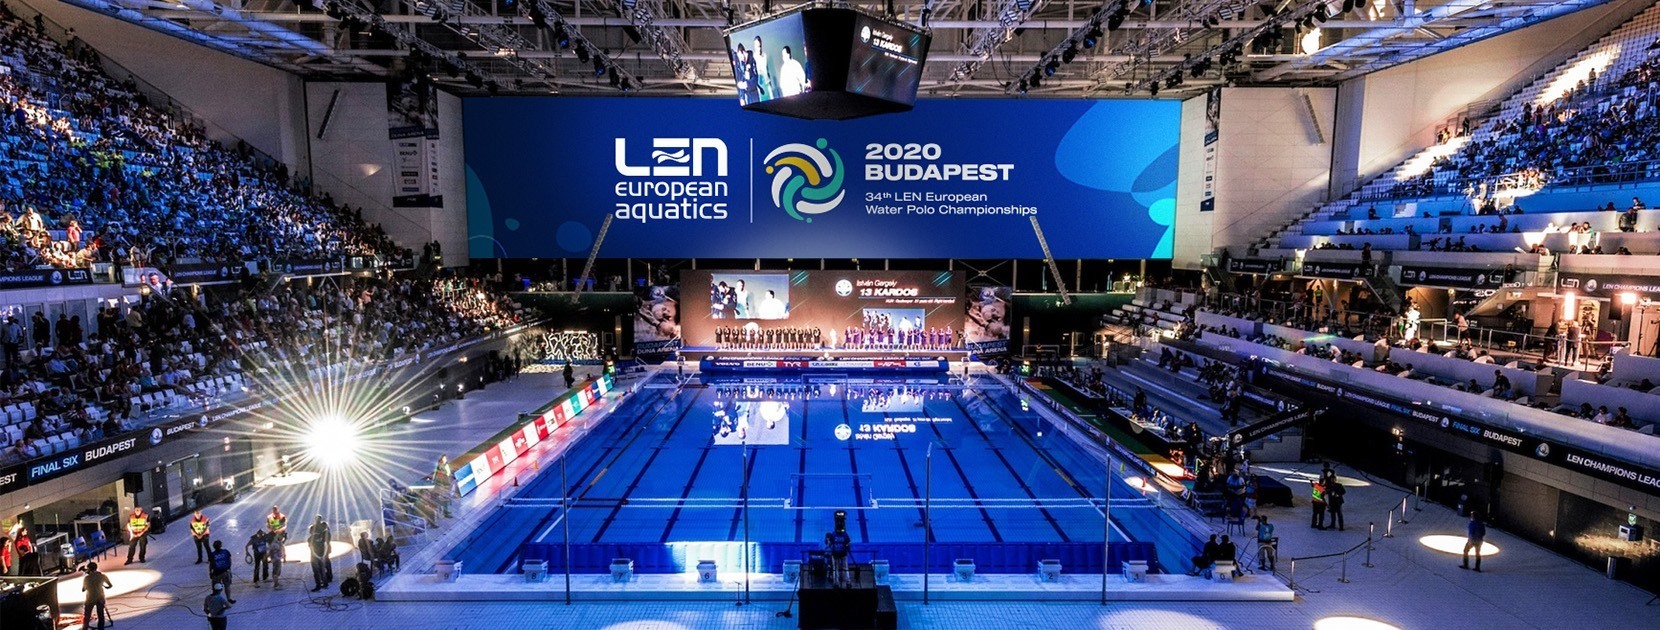 第34屆歐洲水球錦標賽將於26月XNUMX日結束。